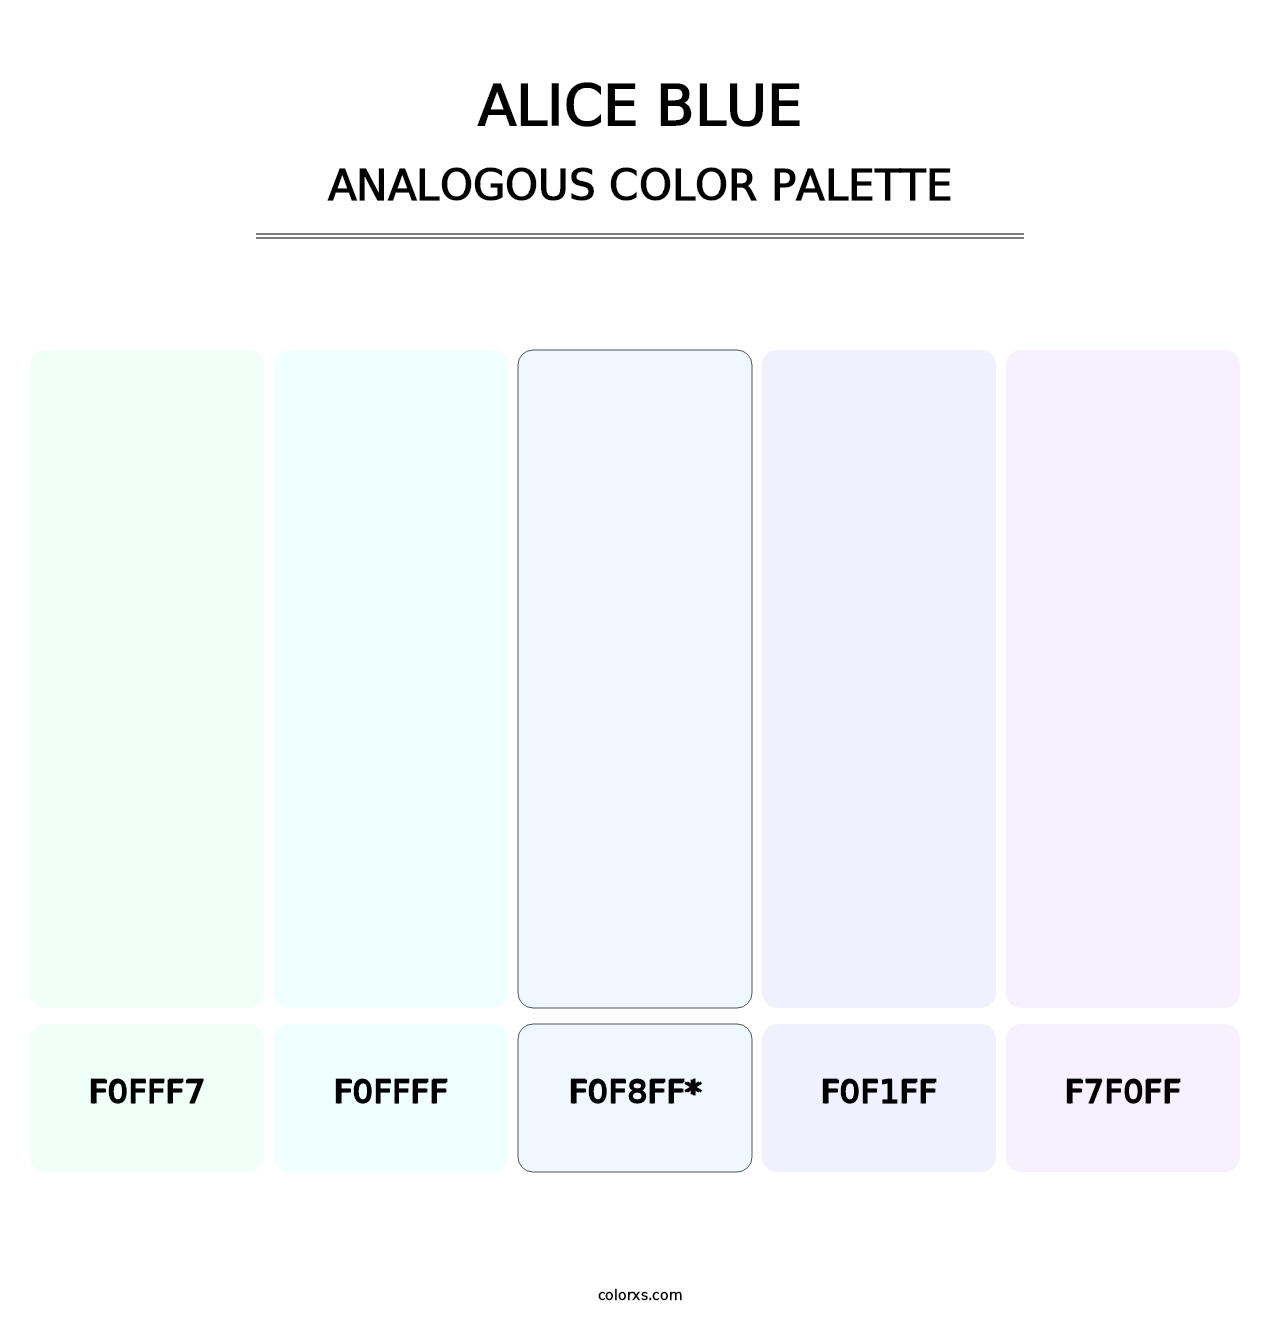 Alice blue - Analogous Color Palette